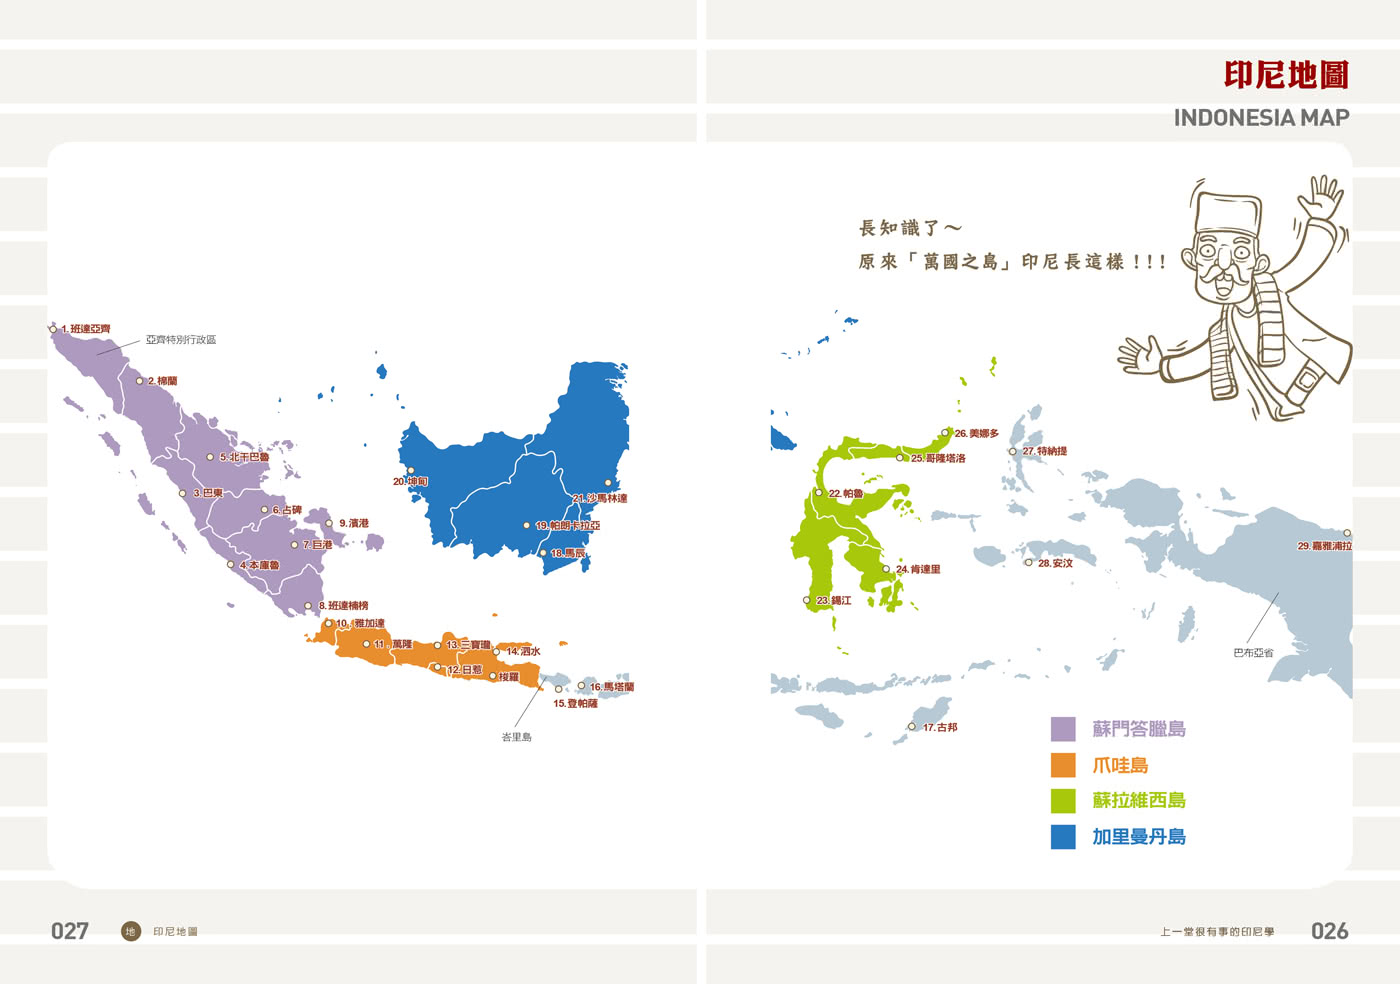 上一堂很有事的印尼學：是隔壁的窮鄰居 還是東協的老大哥？